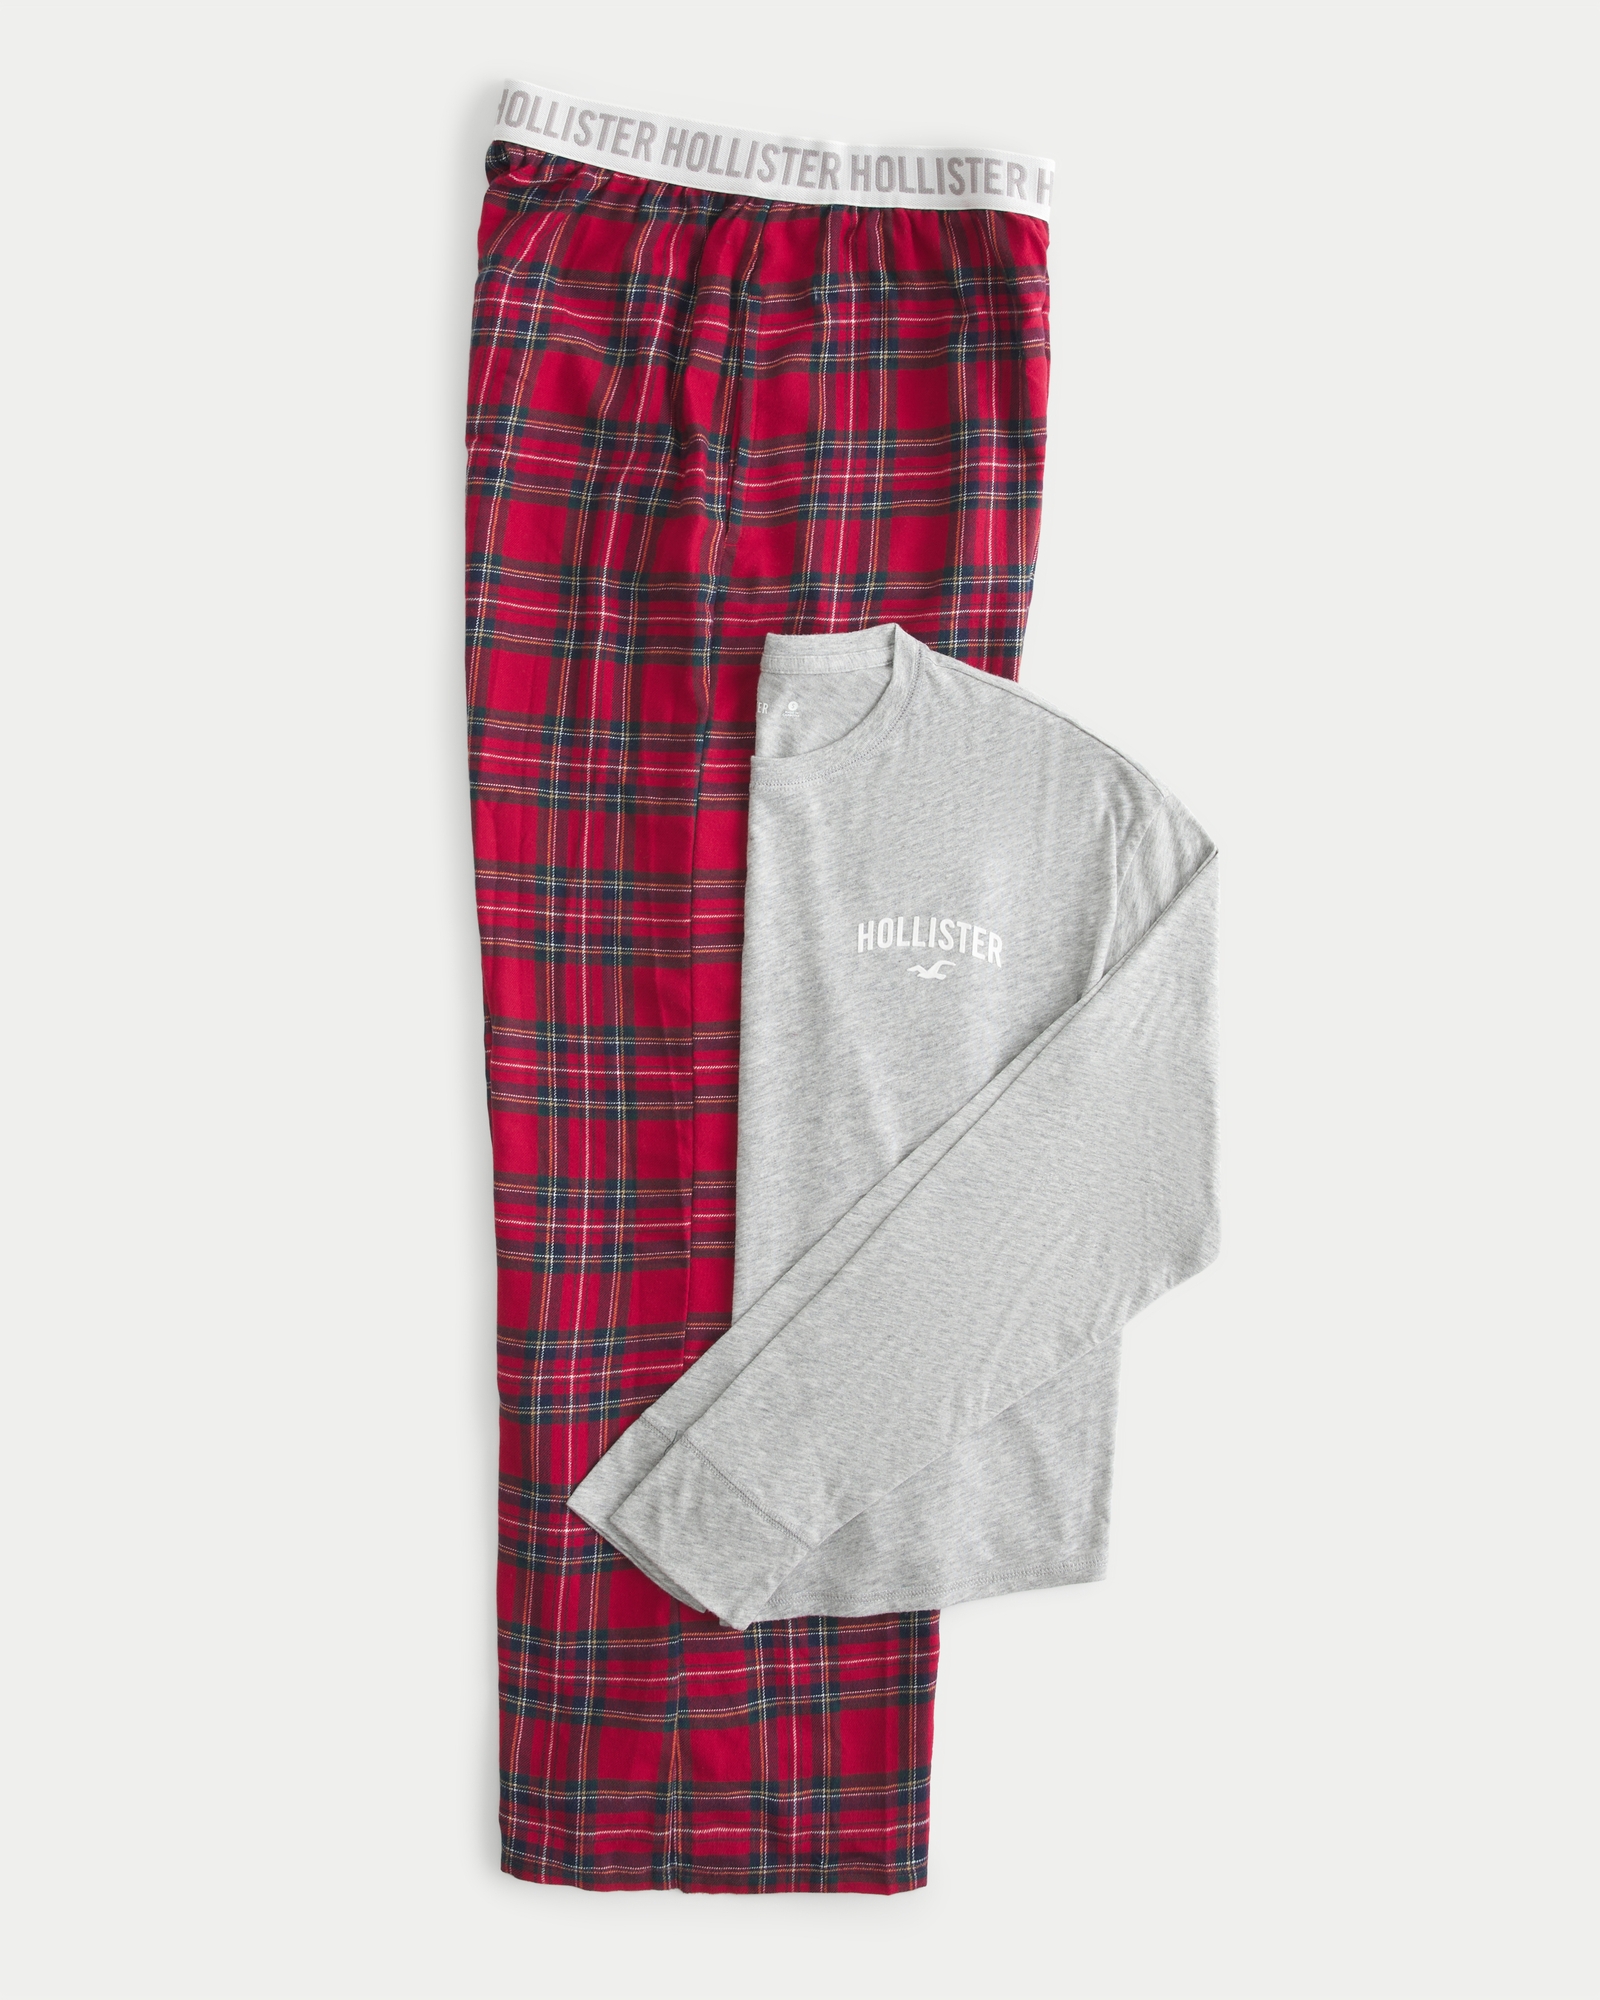 Pizza Words Pajama Pants for Men Pajama Bottoms Lounge Pants Sleep